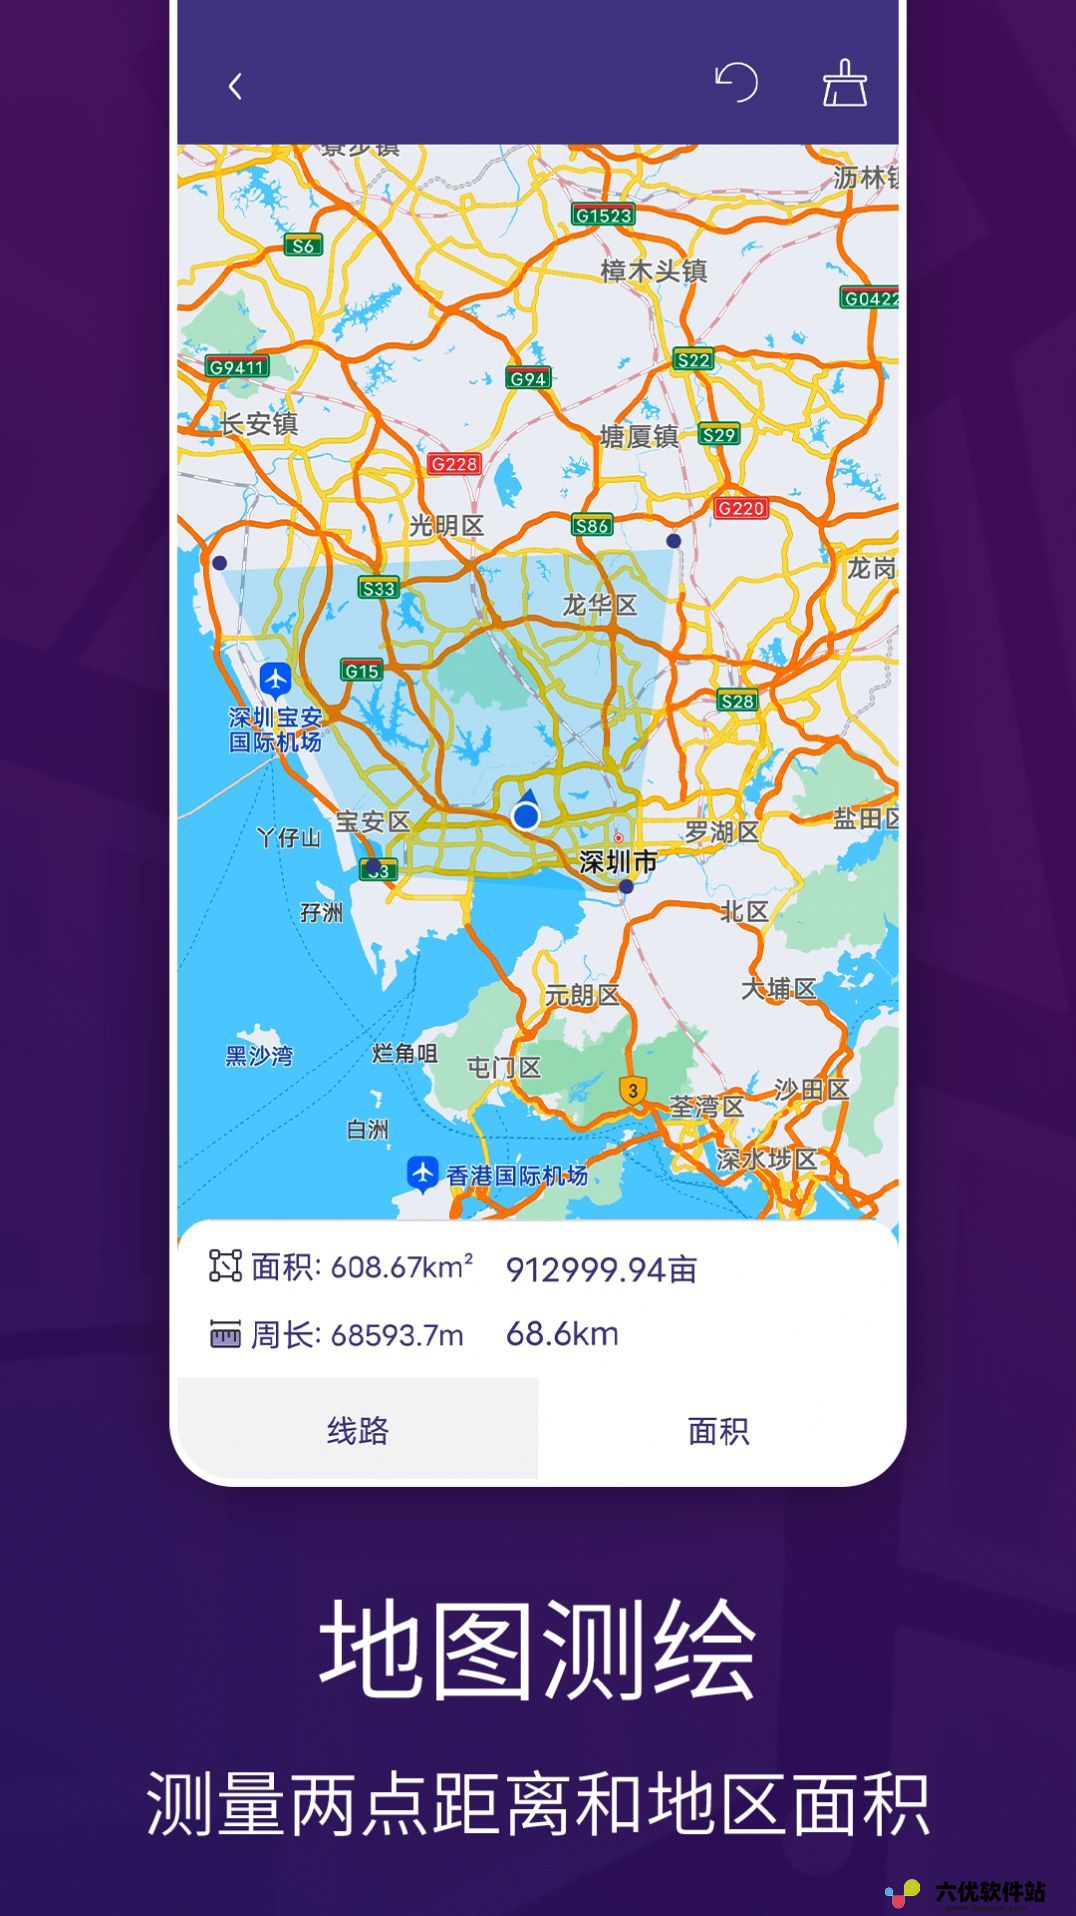 车道级实景地图导航app手机版